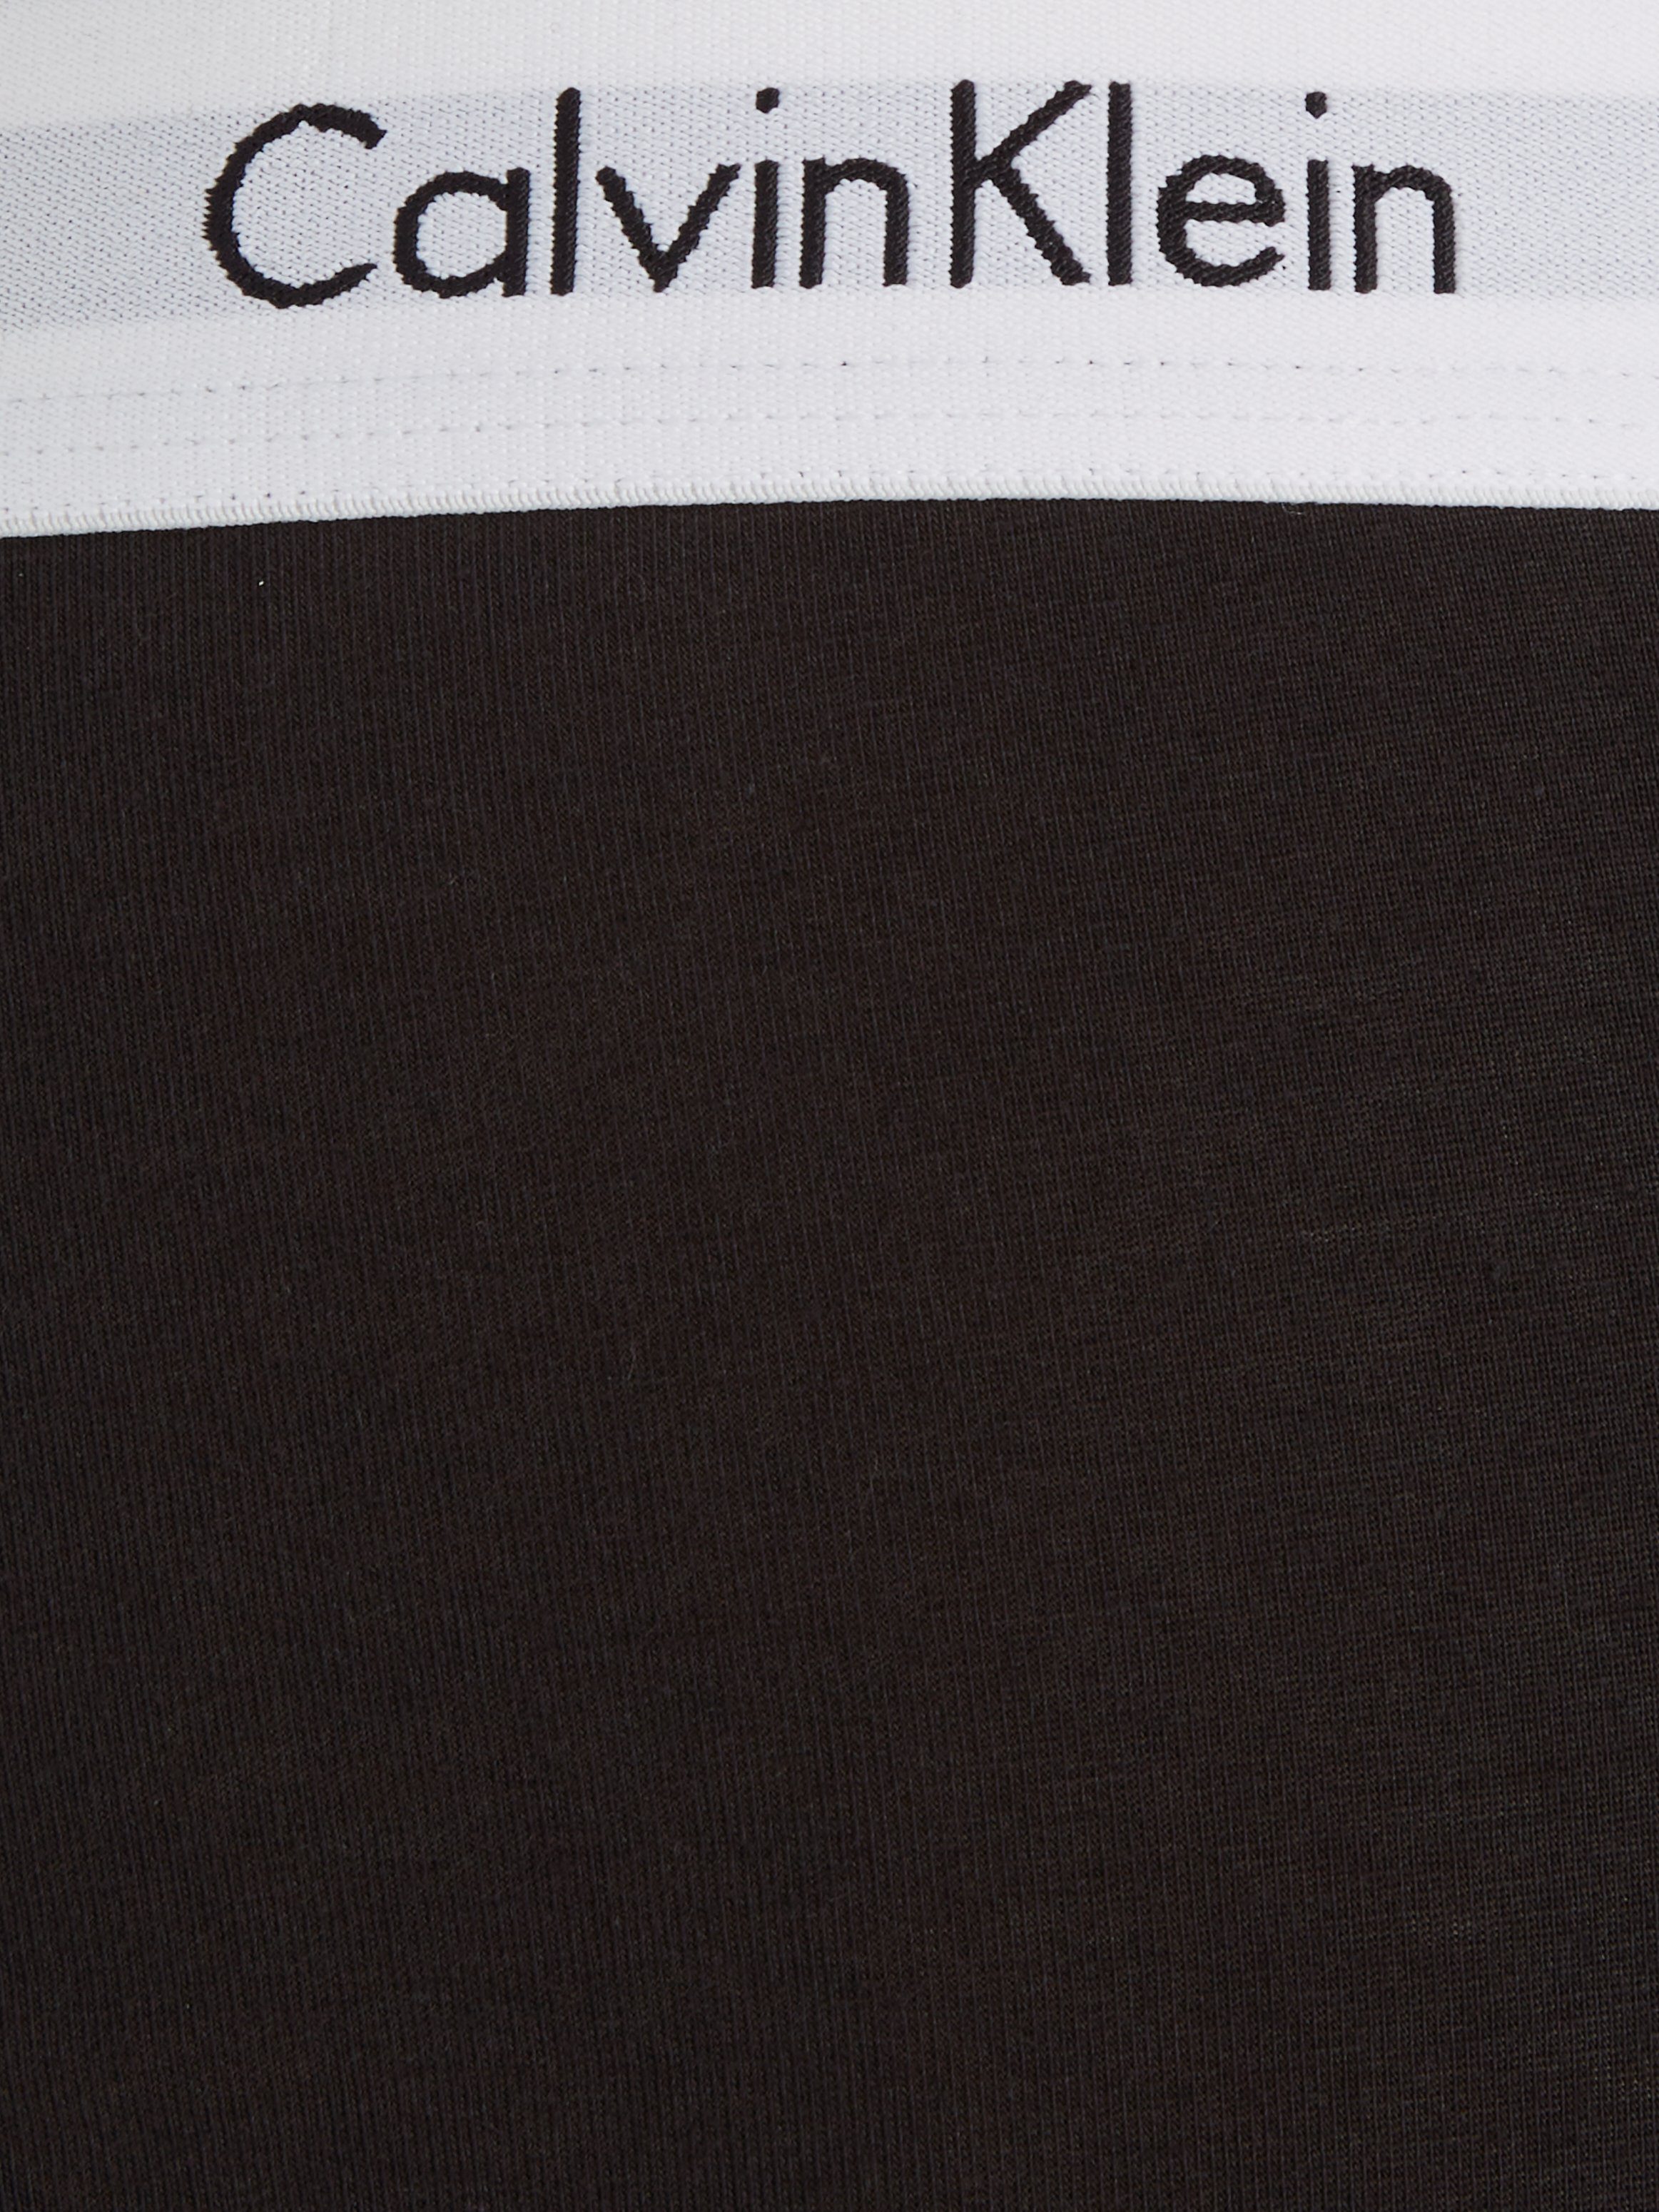 (Packung, Underwear auf weiß 3-St) Logoschriftzug Klein schwarz, Calvin hellgrau-meliert, Bund mit dem Slip